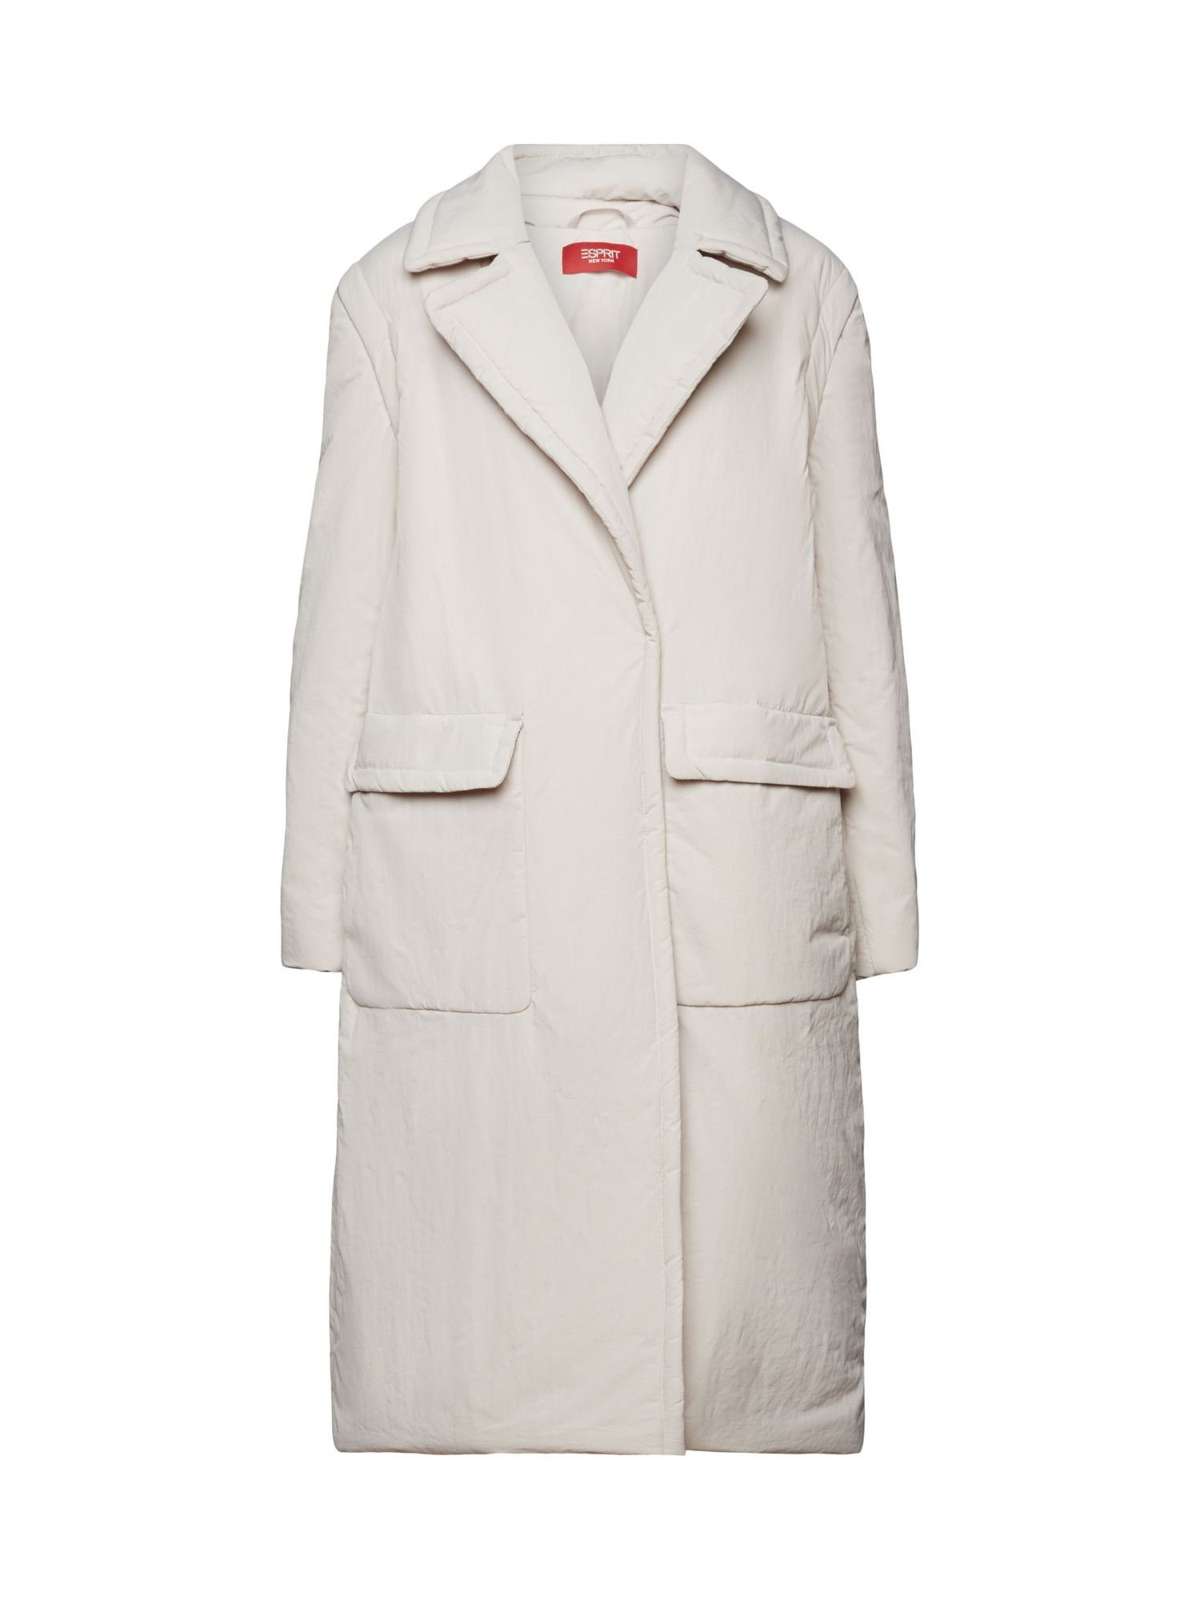 Зимнее пальто Утепленное пальто 2 в 1 со съемными рукавами